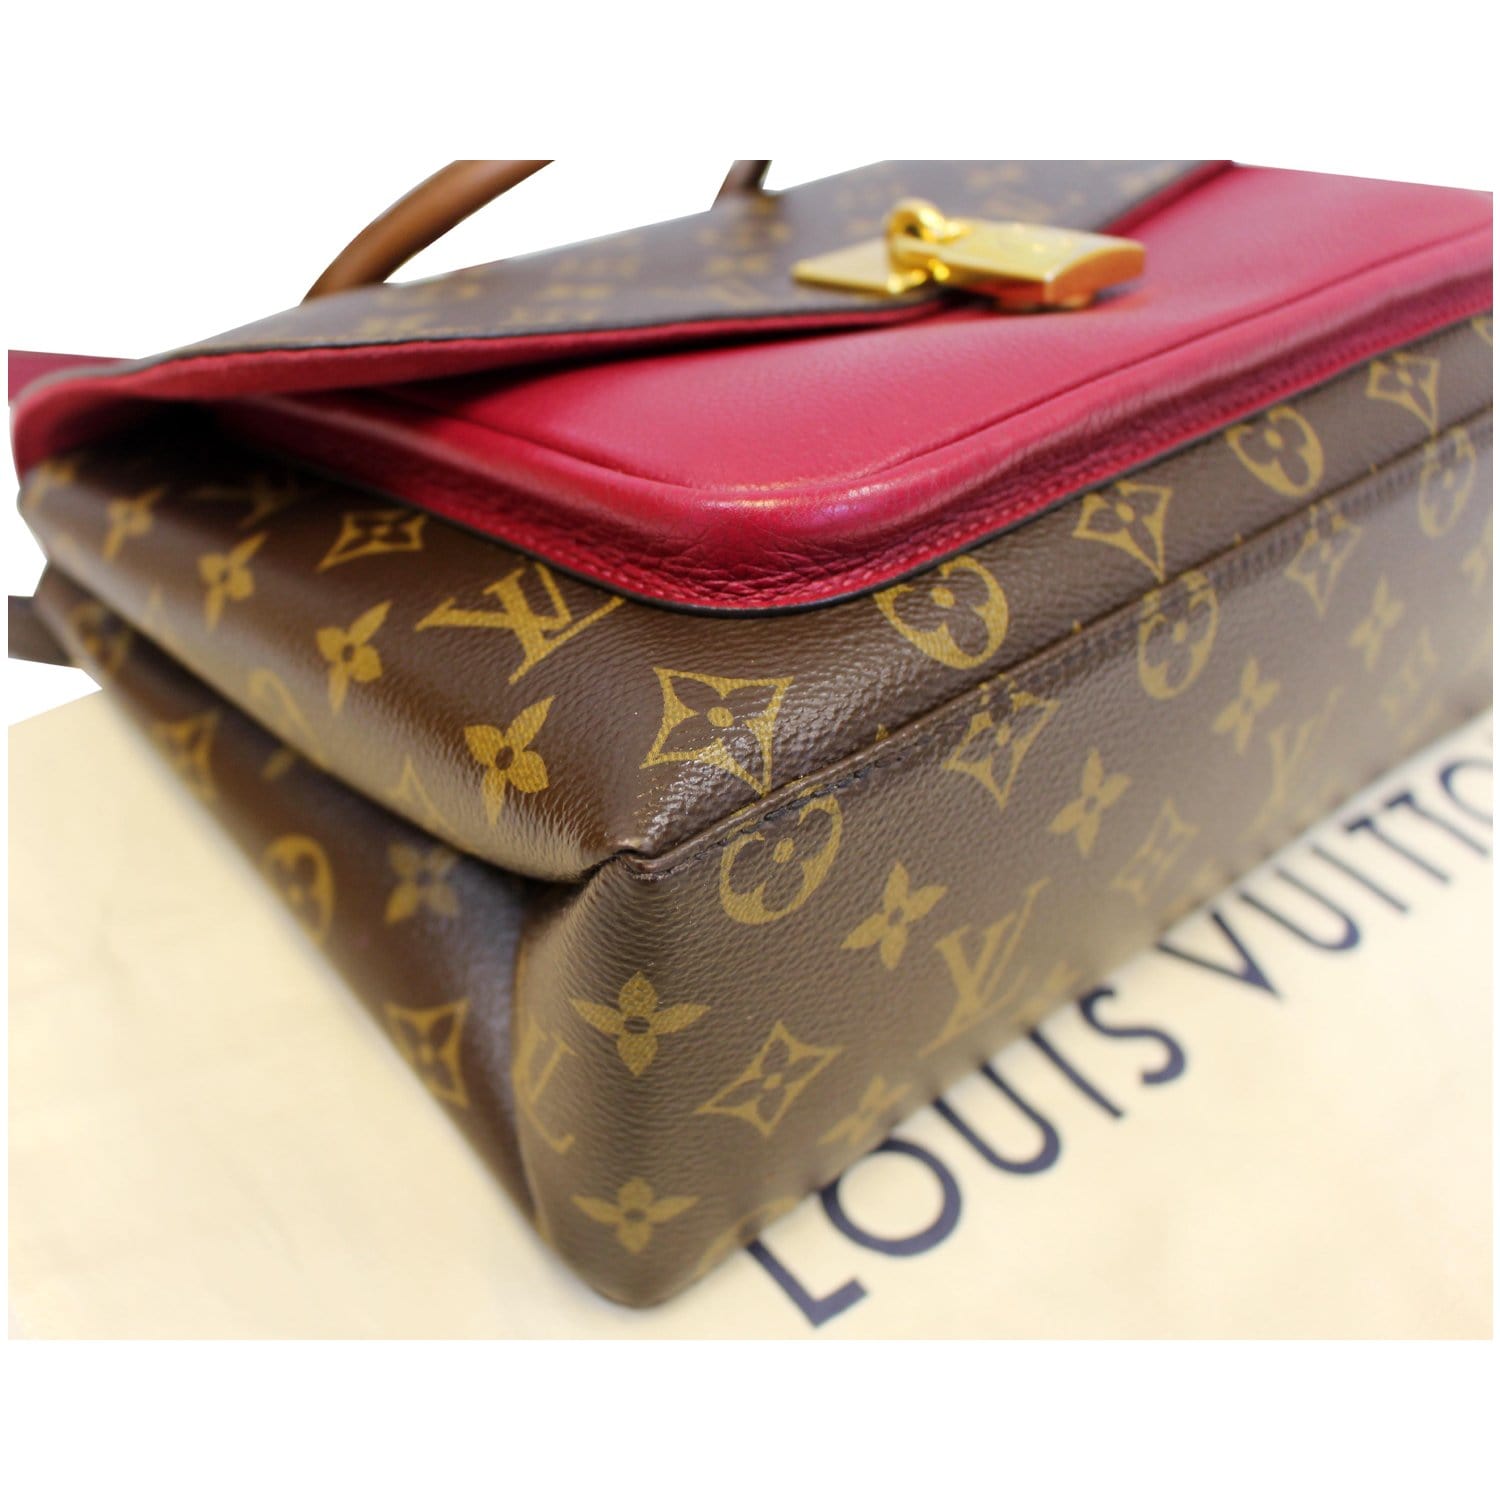 Louis Vuitton Marignan, US fashion